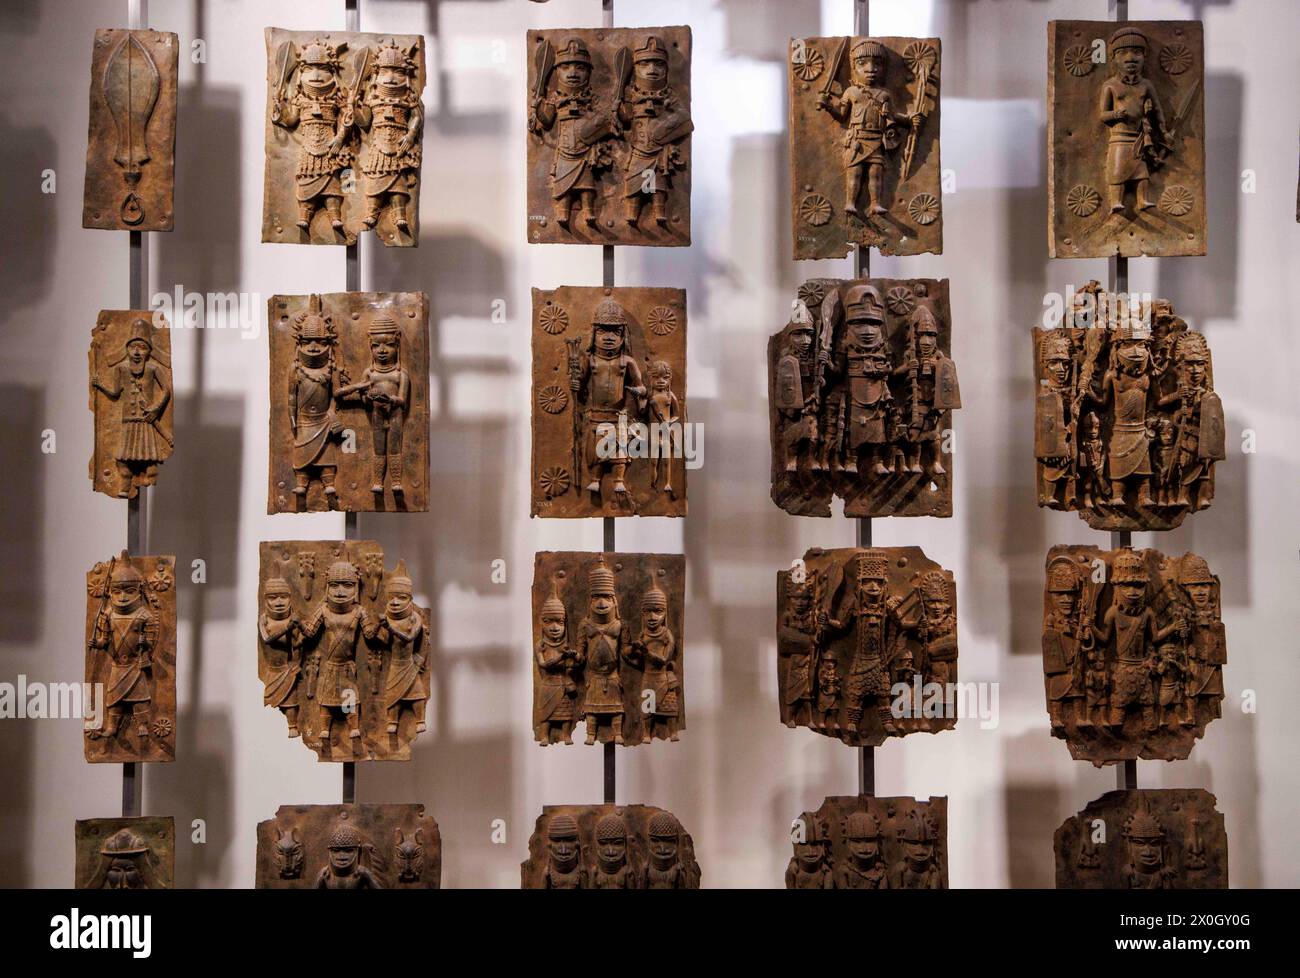 Londra, Regno Unito 12 aprile 2024 i Bronzi Benin nella sezione Africa al British Museum. I Bronzi del Benin sono un gruppo di migliaia di oggetti, tra cui placche in ghisa, teste umane e animali e figure che sono state prese dal regno del Benin, in quella che oggi è la Nigeria, nel 1897. I Bronzi furono probabilmente realizzati tra il 1550-1650 da artigiani che lavoravano per la corte di Oba il re. Per molti nigeriani, i Bronzi del Benin sono un potente ricordo del colonialismo e dei suoi continui effetti sulla società africana. I cittadini del paese hanno da tempo chiesto il ritorno dei Bronzi del Benin. Foto Stock